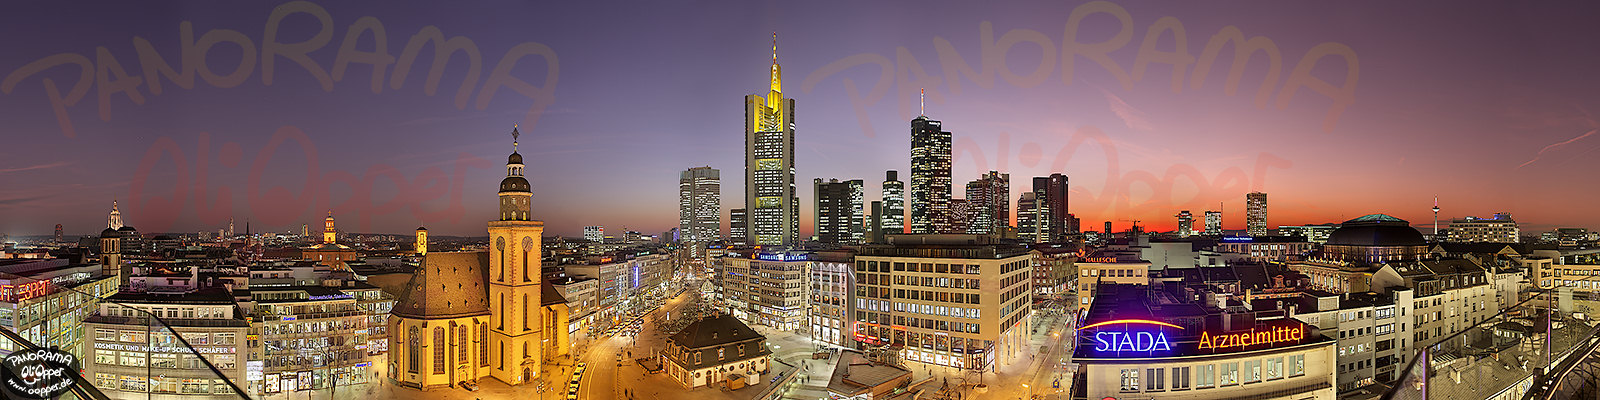 Frankfurt - Skyline von der Zeilgalerie - p262 - (c) by Oliver Opper